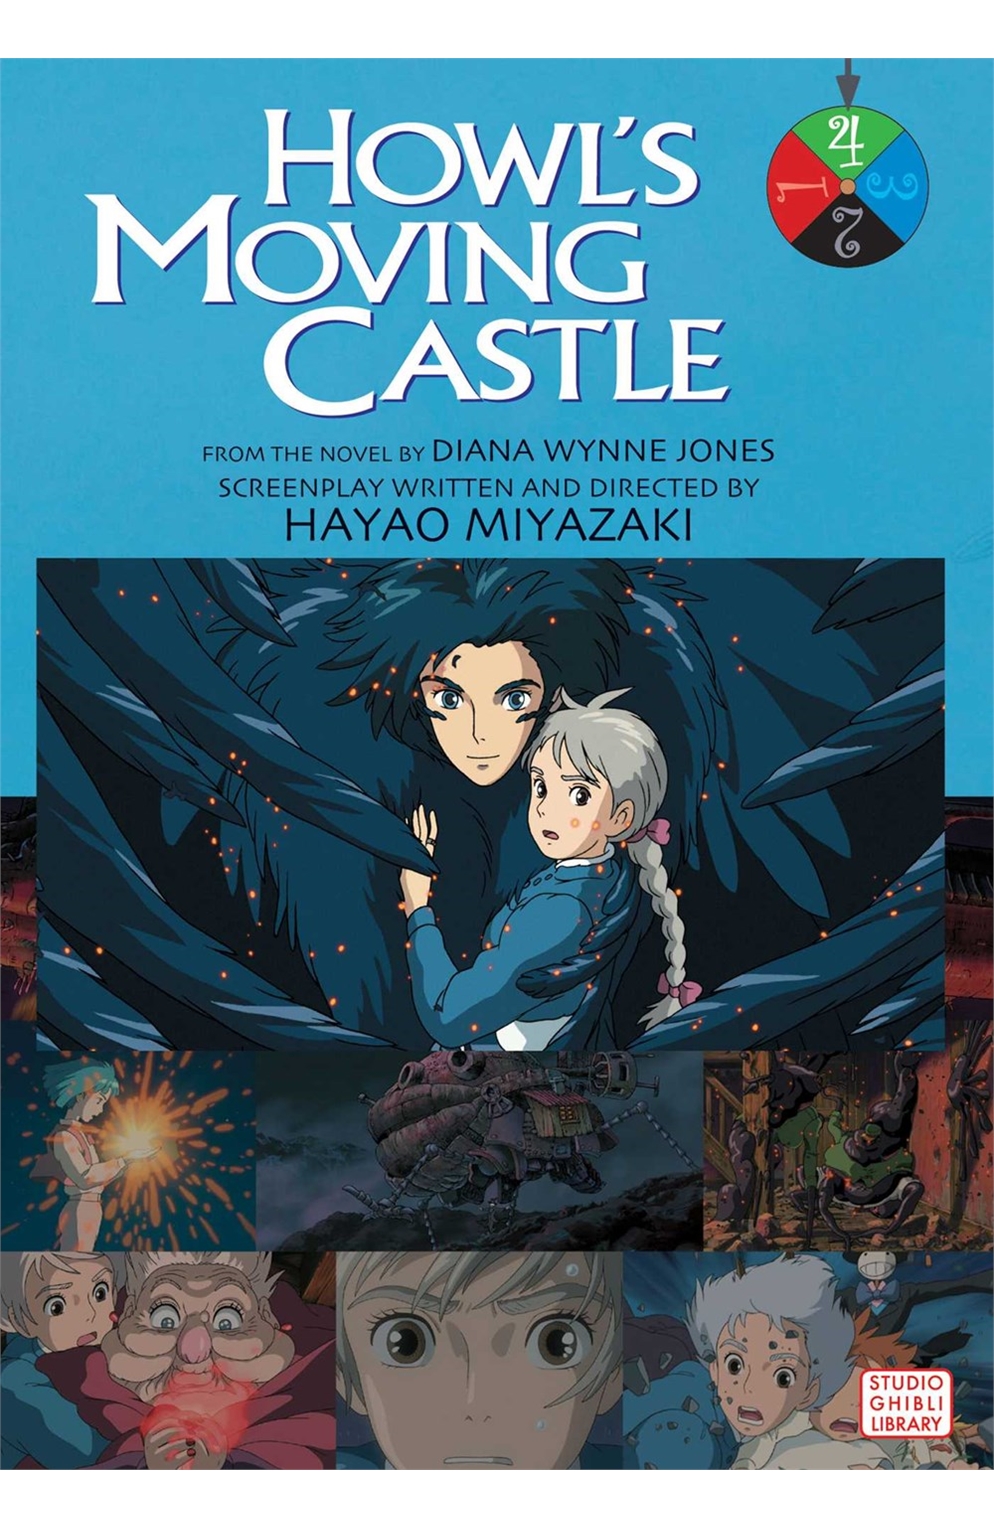 Howl's Moving Castle Film Comics Manga Volume 4